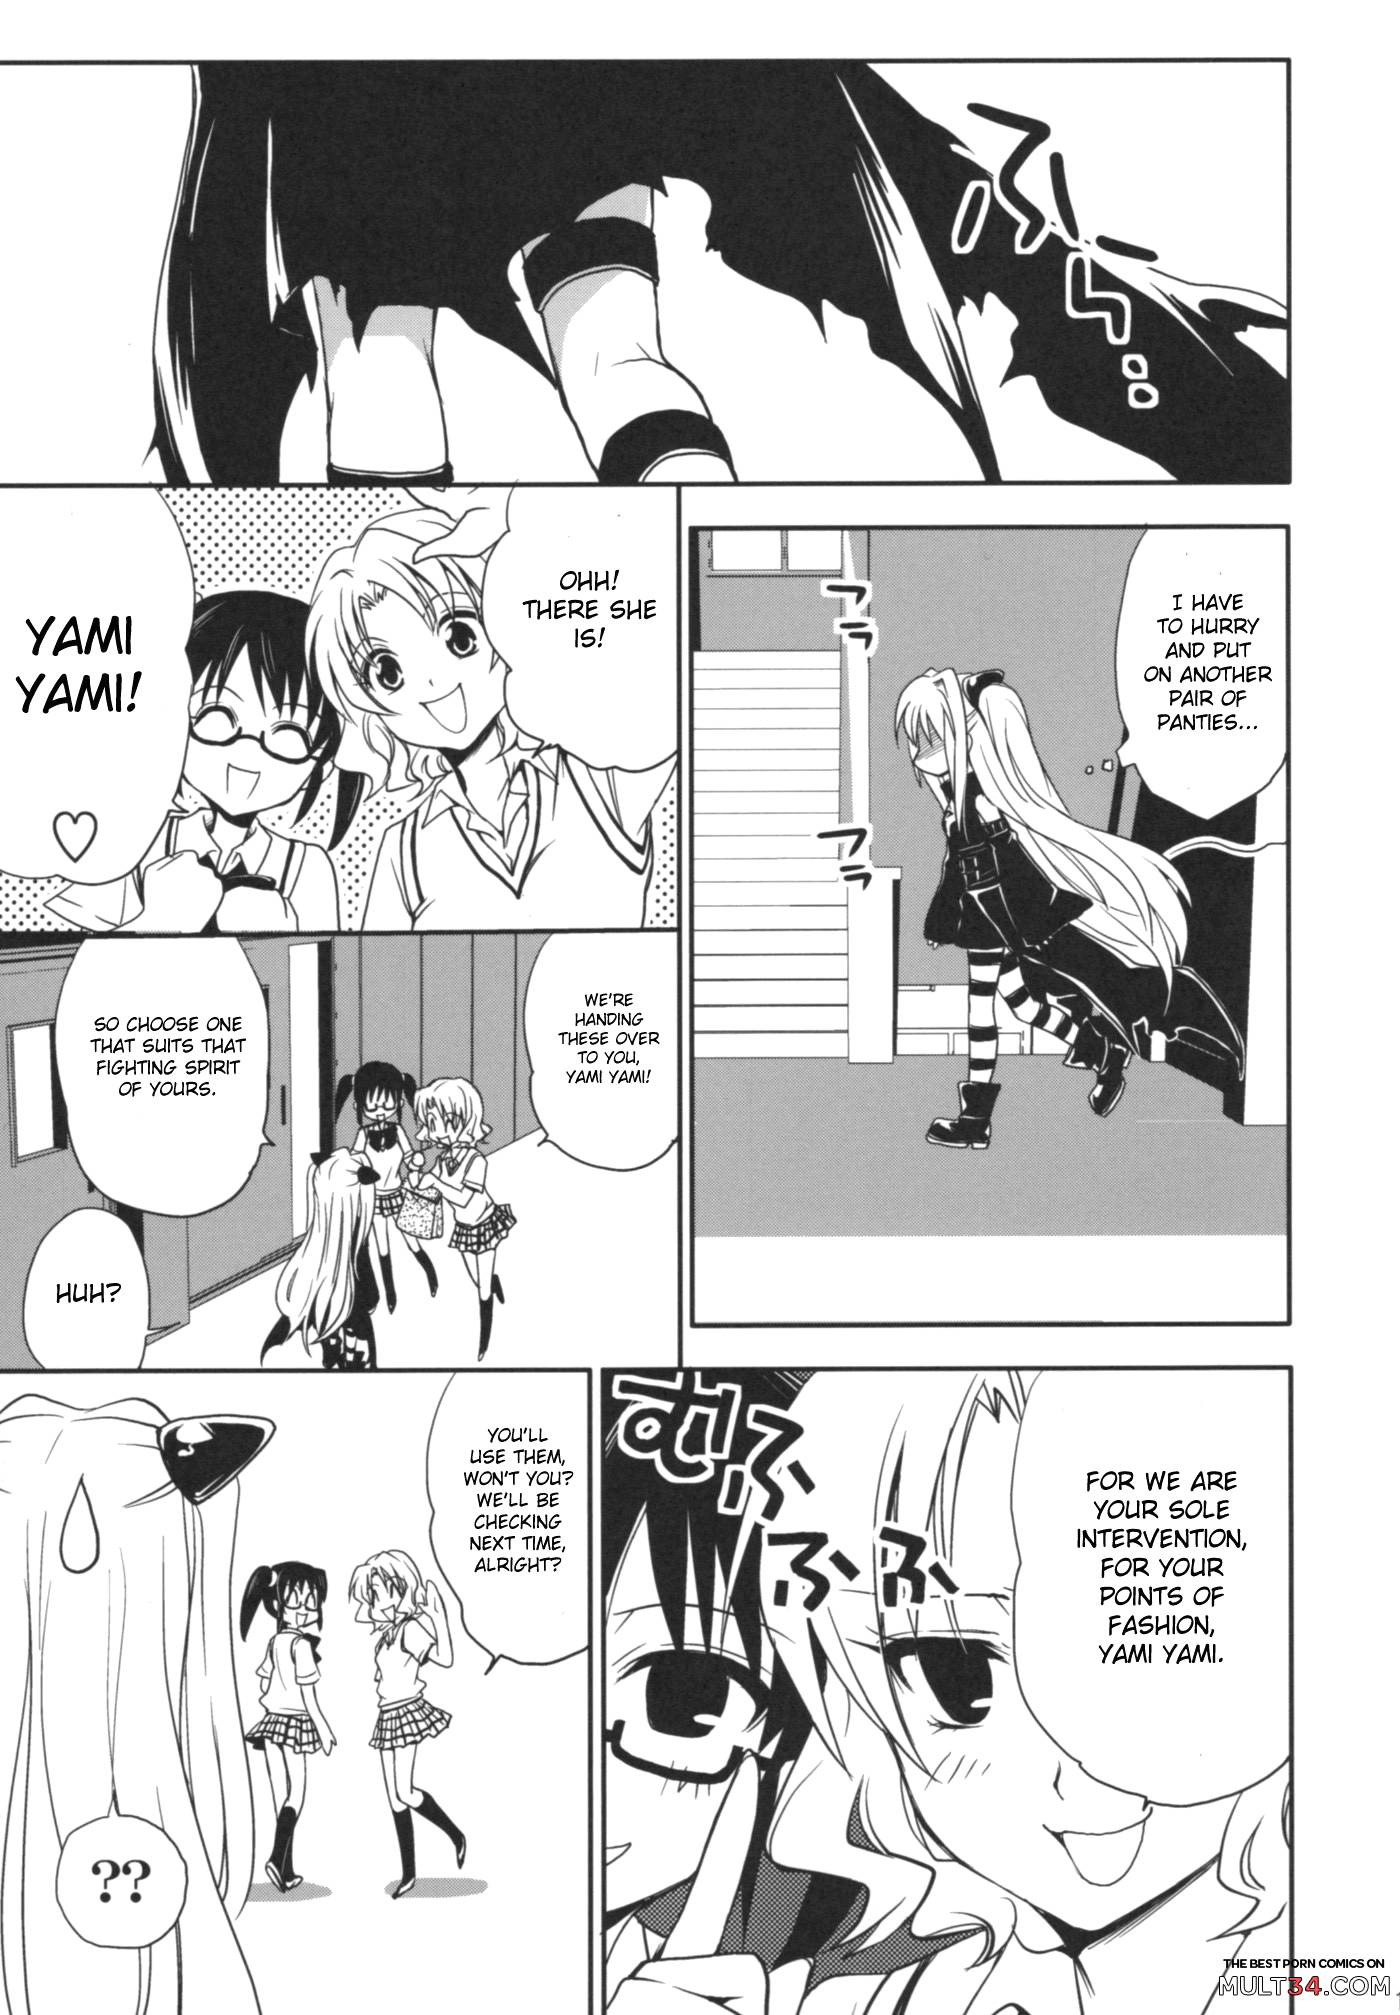 Yami Yami no Nayami page 16